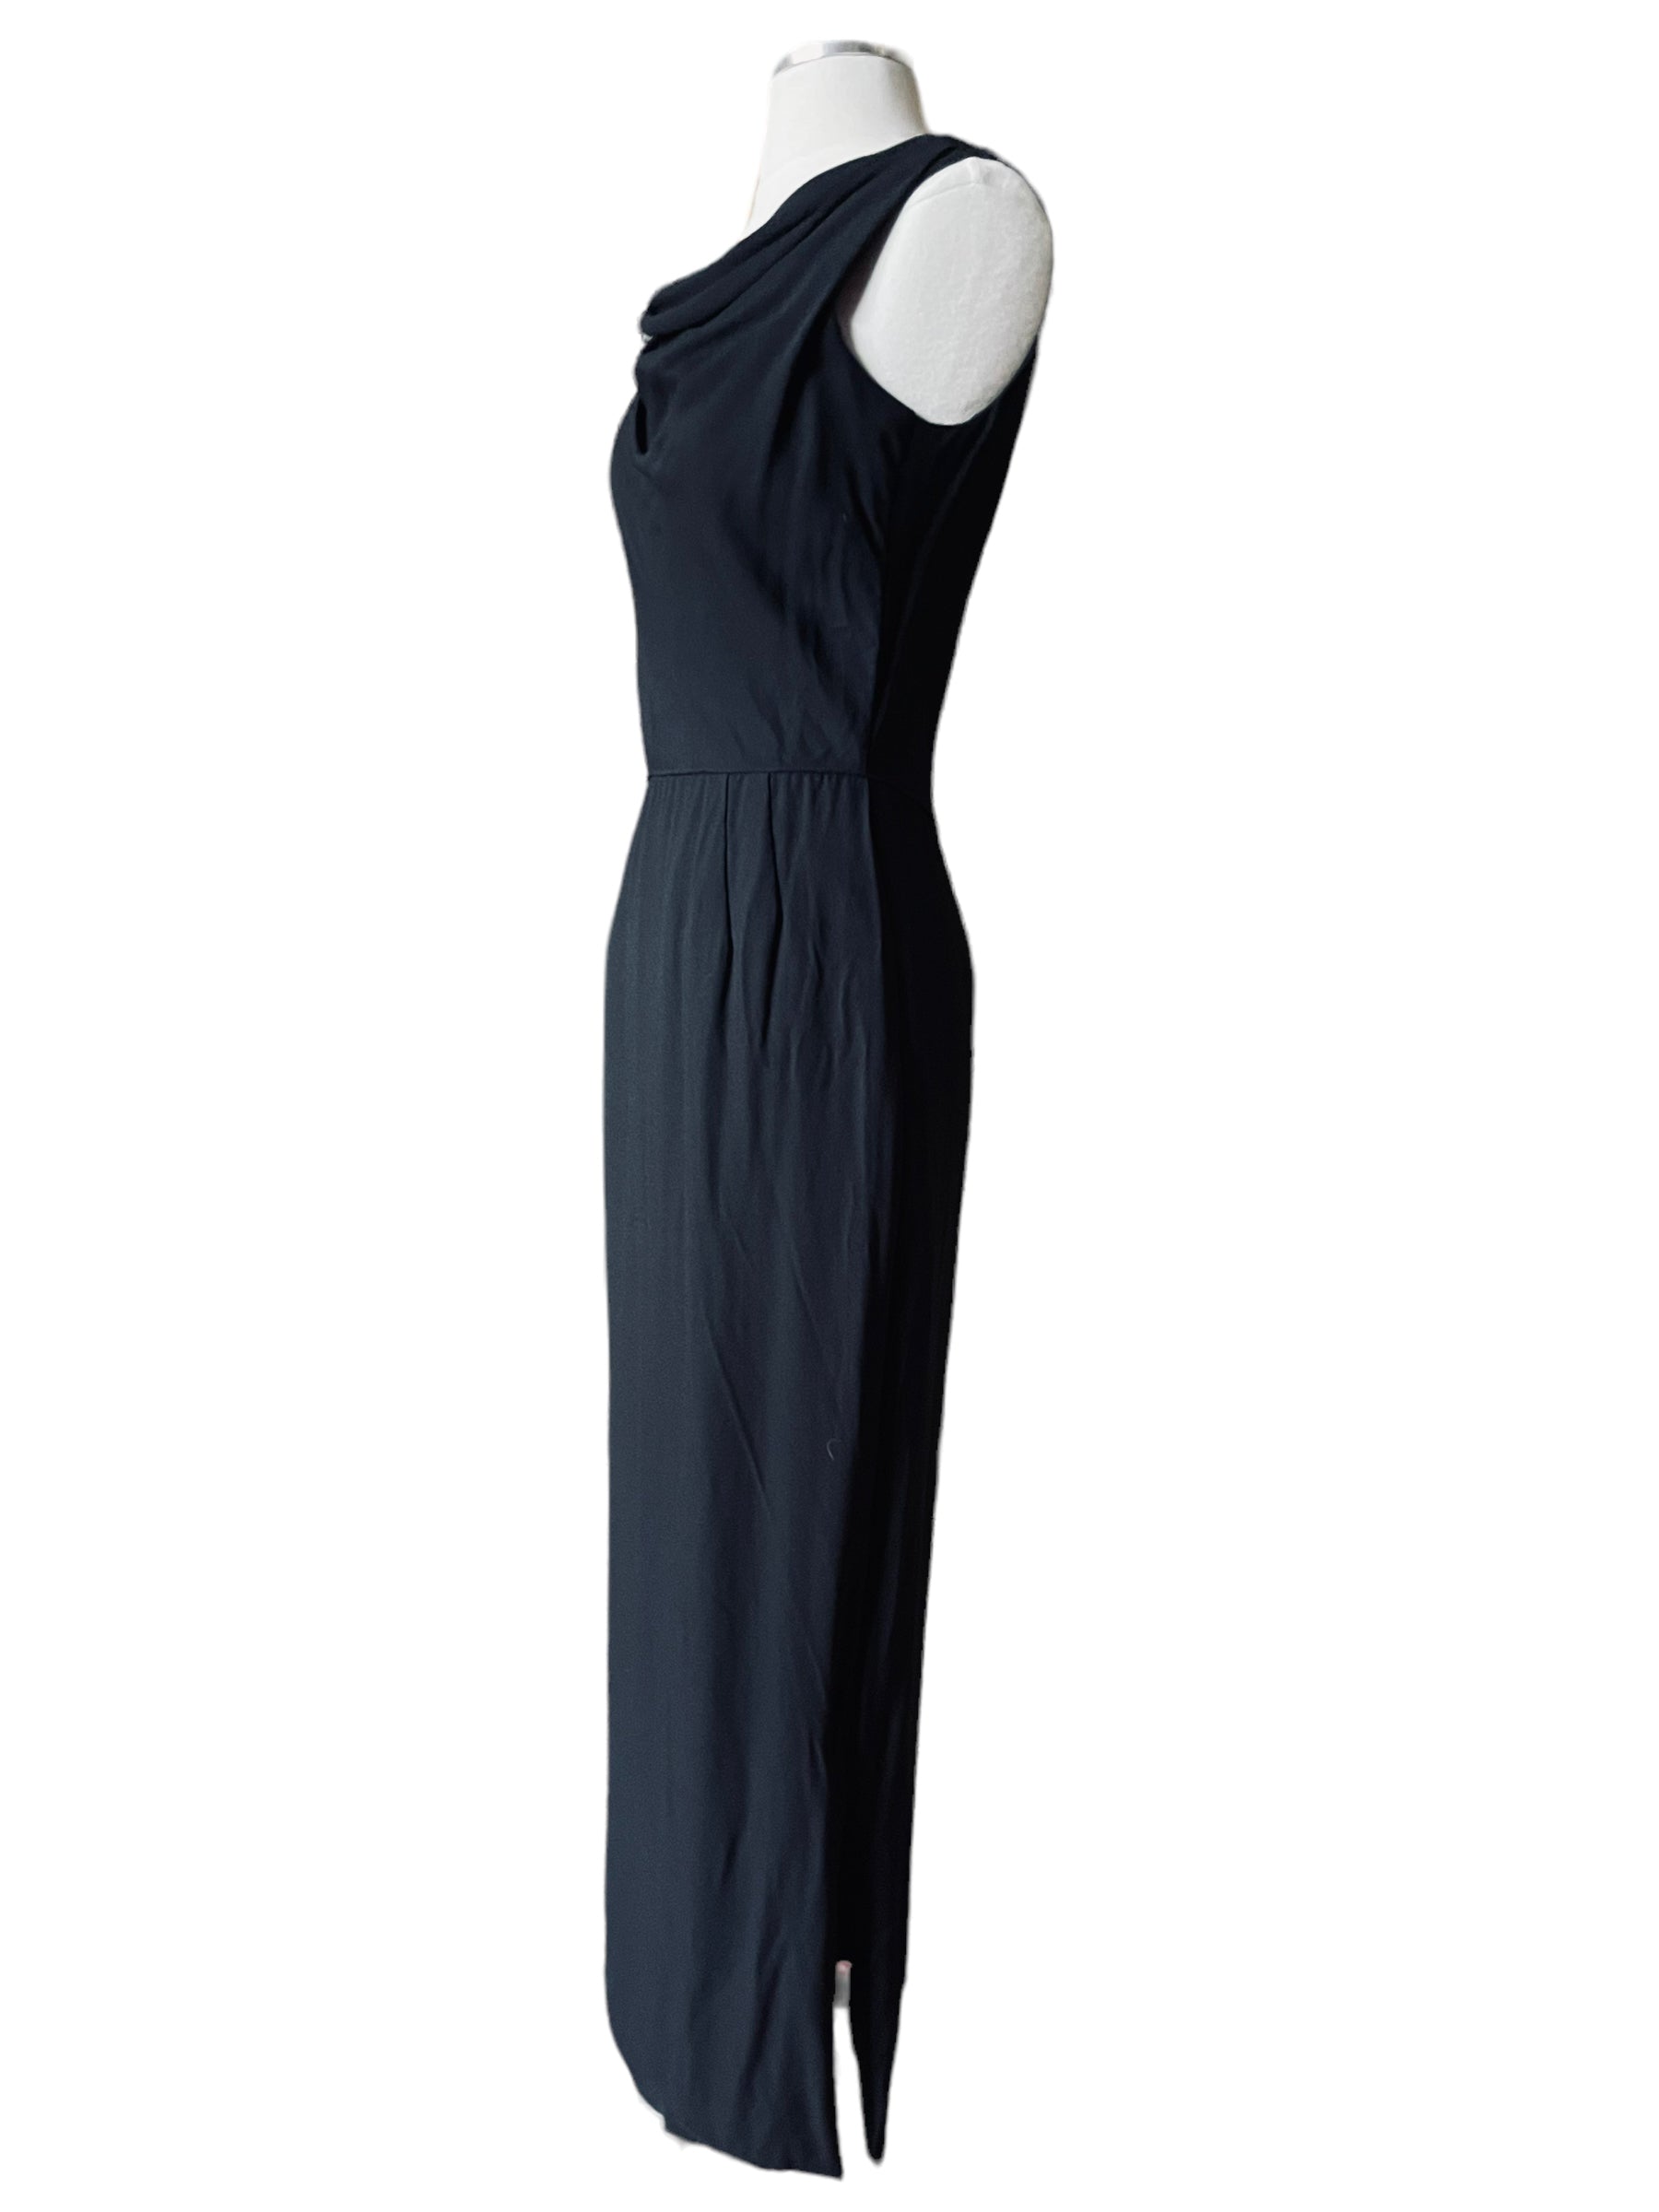 Full left side view of Vintage 1950s Alfred Werber Black Maxi Dress |  Barn Owl Vintage | Seattle Vintage Dresses